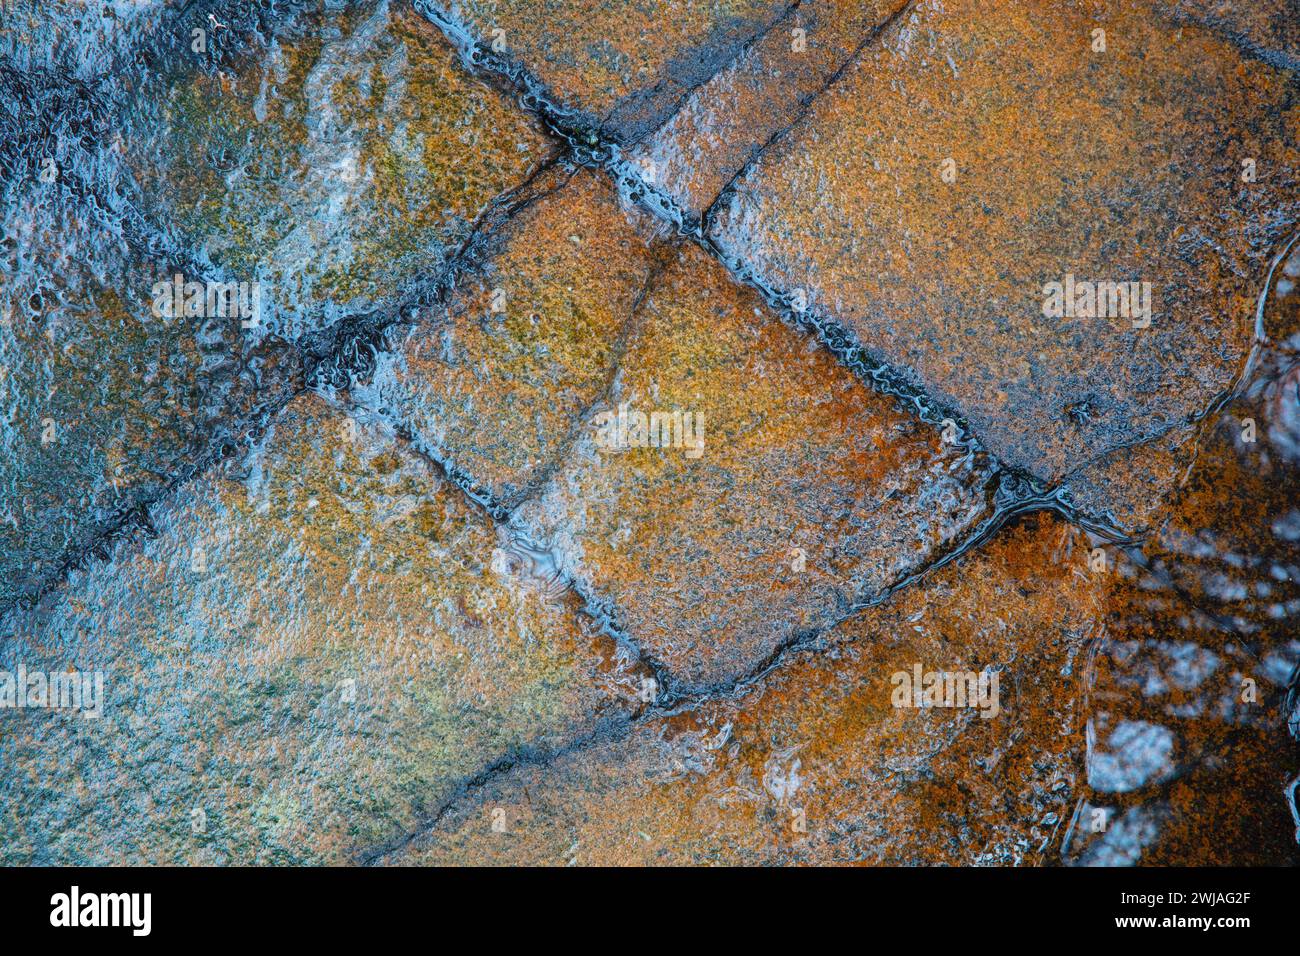 Immagine astratta della roccia bagnata, Hamsterley Forest, Inghilterra, Regno Unito. Foto Stock